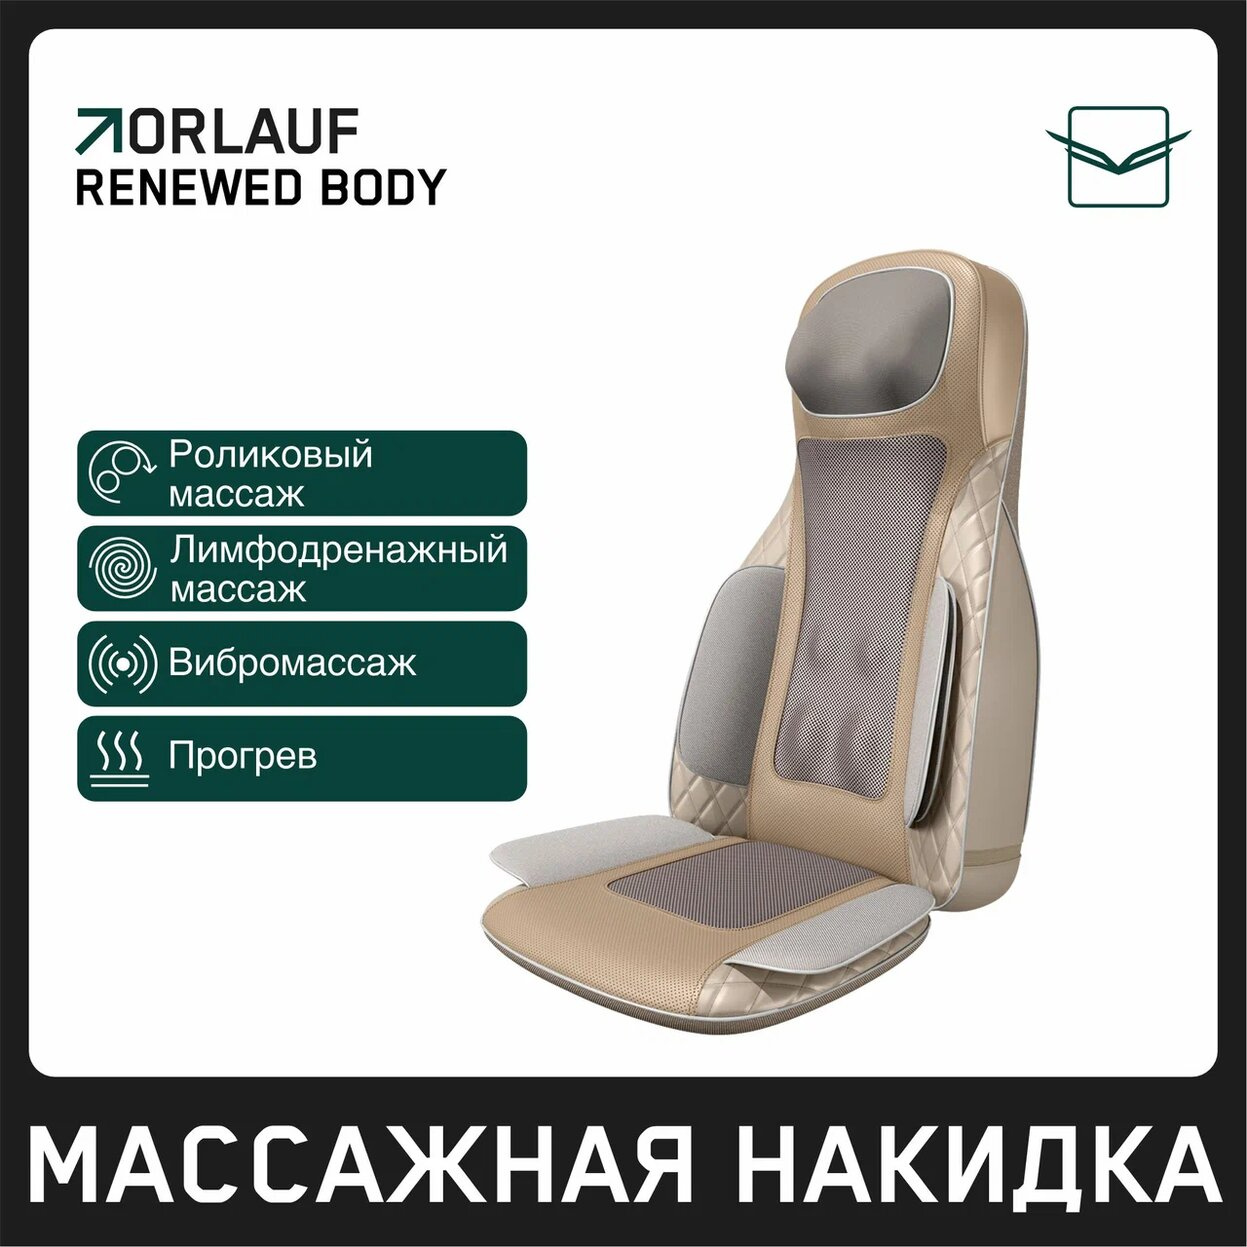 Orlauf Renewed Body из каталога массажных накидок в Москве по цене 39900 ₽